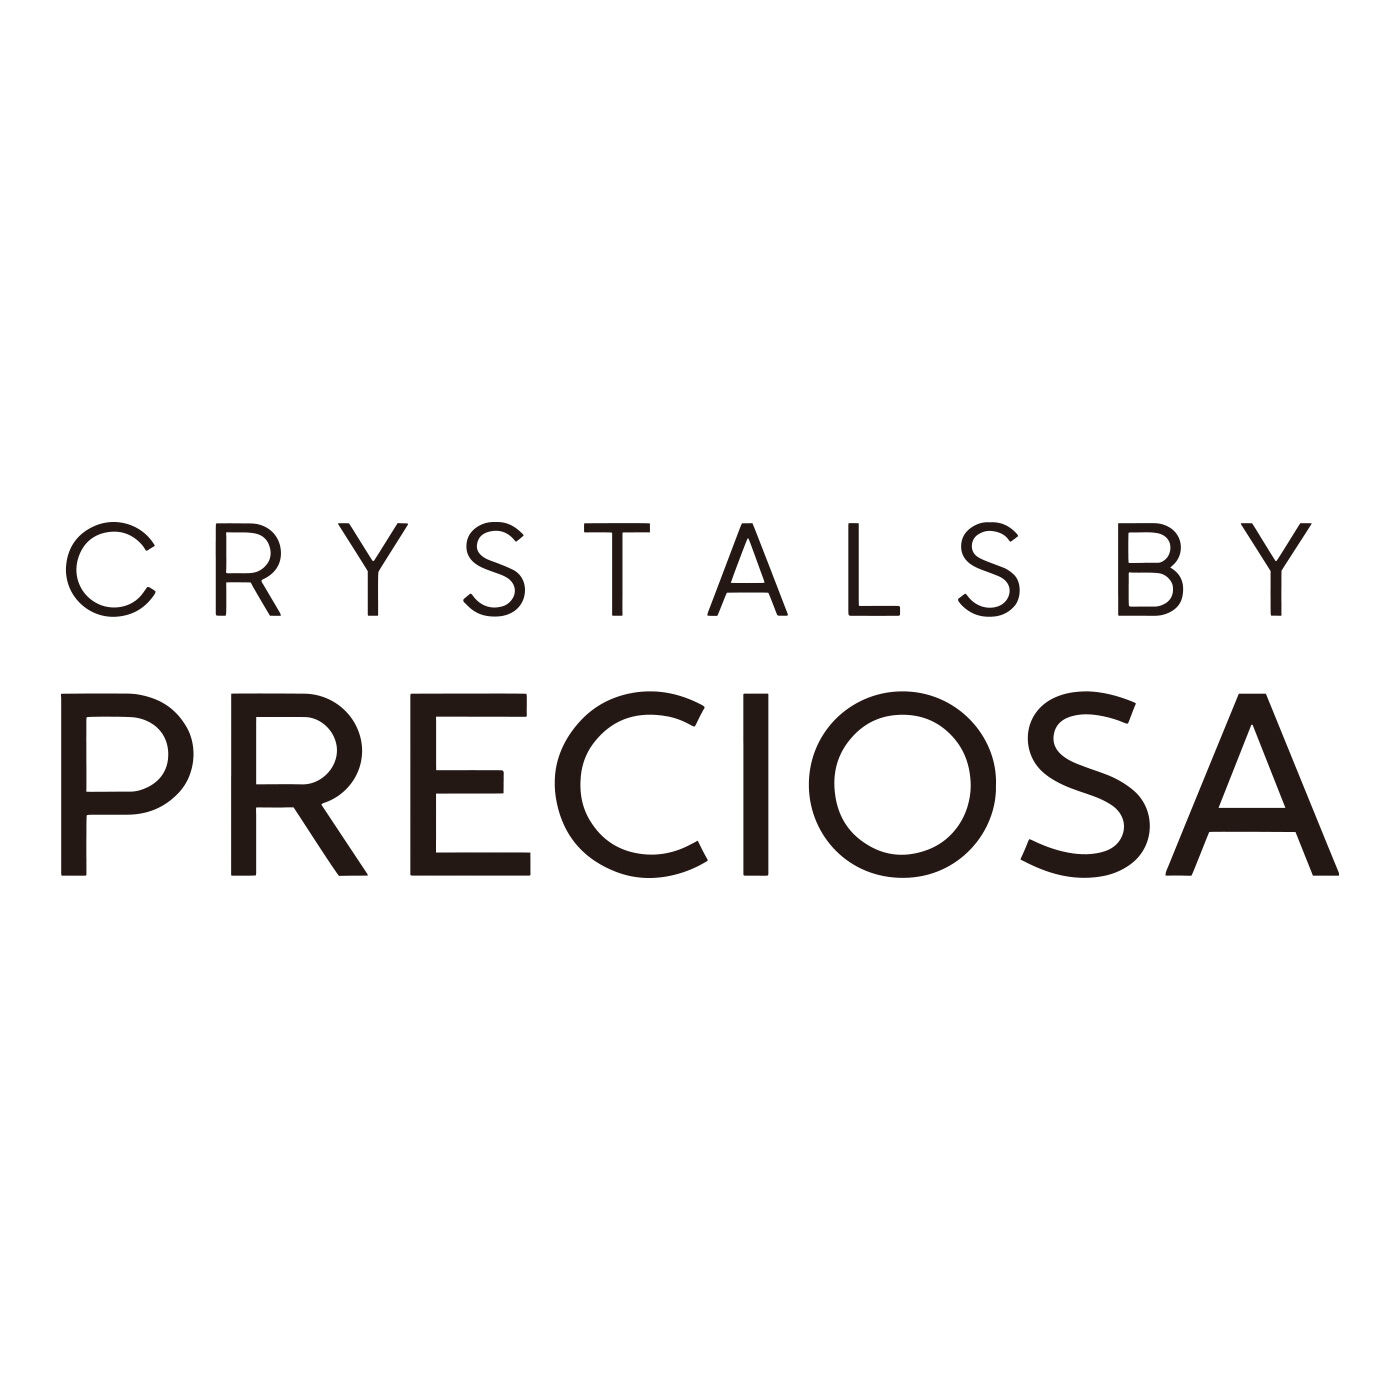 SeeMONO|宝石のように集めて愛（め）でる プレシオサ社のクリスタルコレクションの会|【プレシオサ社について】独自の製法と加工法によるカッティング技術で、チェコで高品質のクリスタルジュエリーやオブジェを製造する、プレシオサ社。「プレシオサ」とは、「貴重な」「上品な」を意味するpreciousに由来しています。プレシオサ社のガラス製造の歴史は16世紀、今日クリスタルベリーとして知られるボヘミア北部の山岳地帯で、最初のガラス窯に点火されたときにさかのぼります。1948年には地域の24のガラス工場が合併し、世界最高のボヘミアクリスタル生産業者であるプレシオサ社が設立されました。